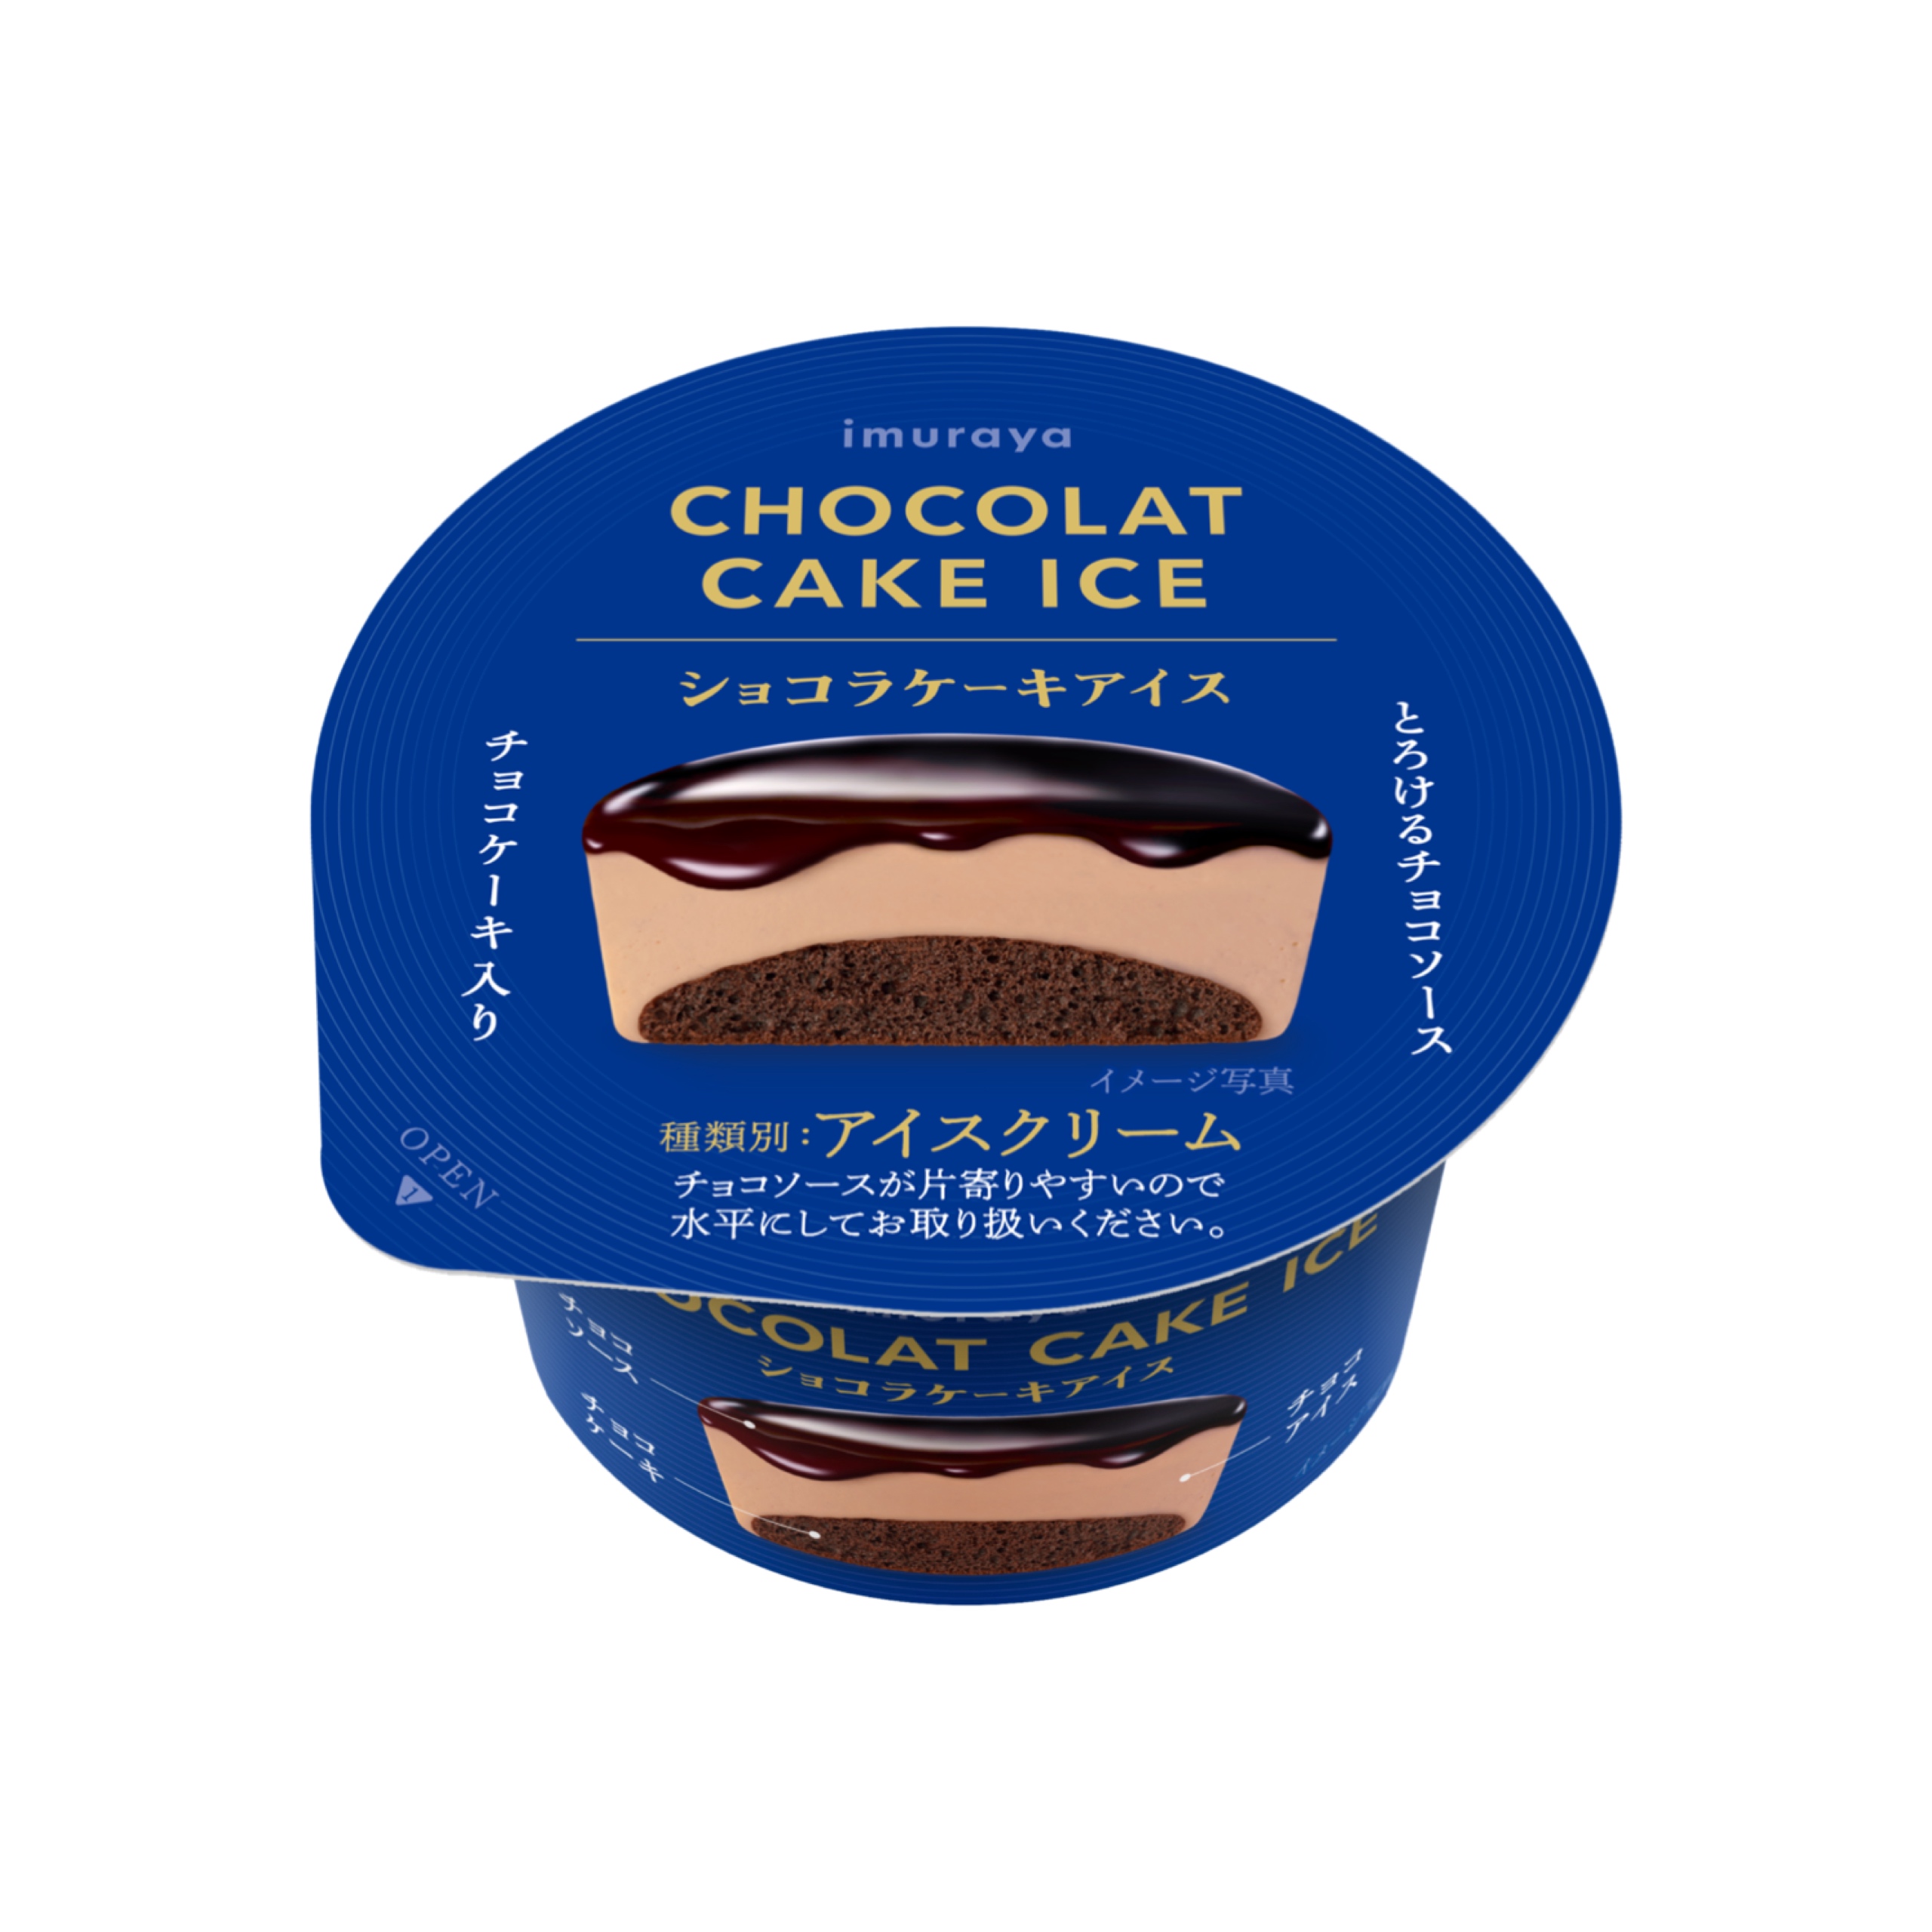 【新作アイス】3層のチョコを満喫できる贅沢ケーキアイス『ショコラケーキアイス』11月20日(月)より期間限定発売🍫🍨🤎💖